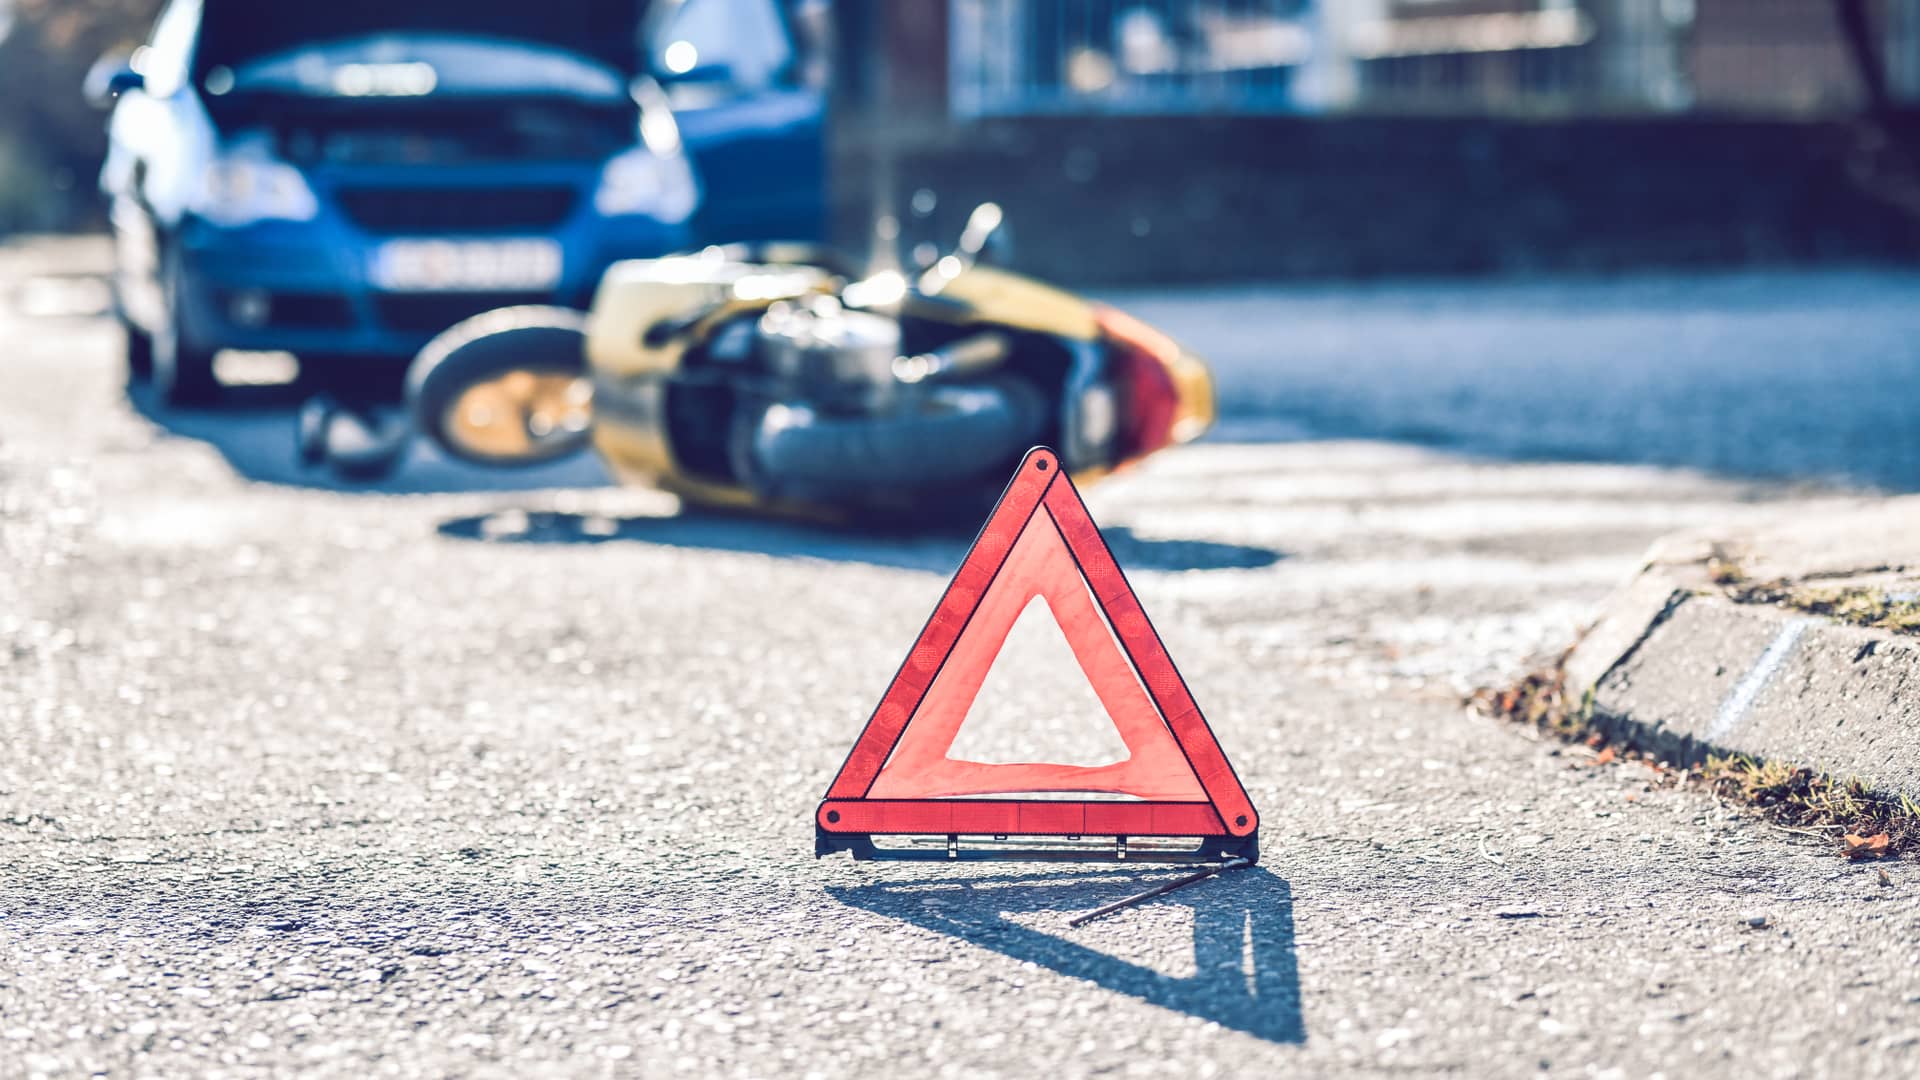 Triangulos puestos para que los condcutores tengan precaución porque ha ocurrido un accidente entre un coche y una moto con seguro